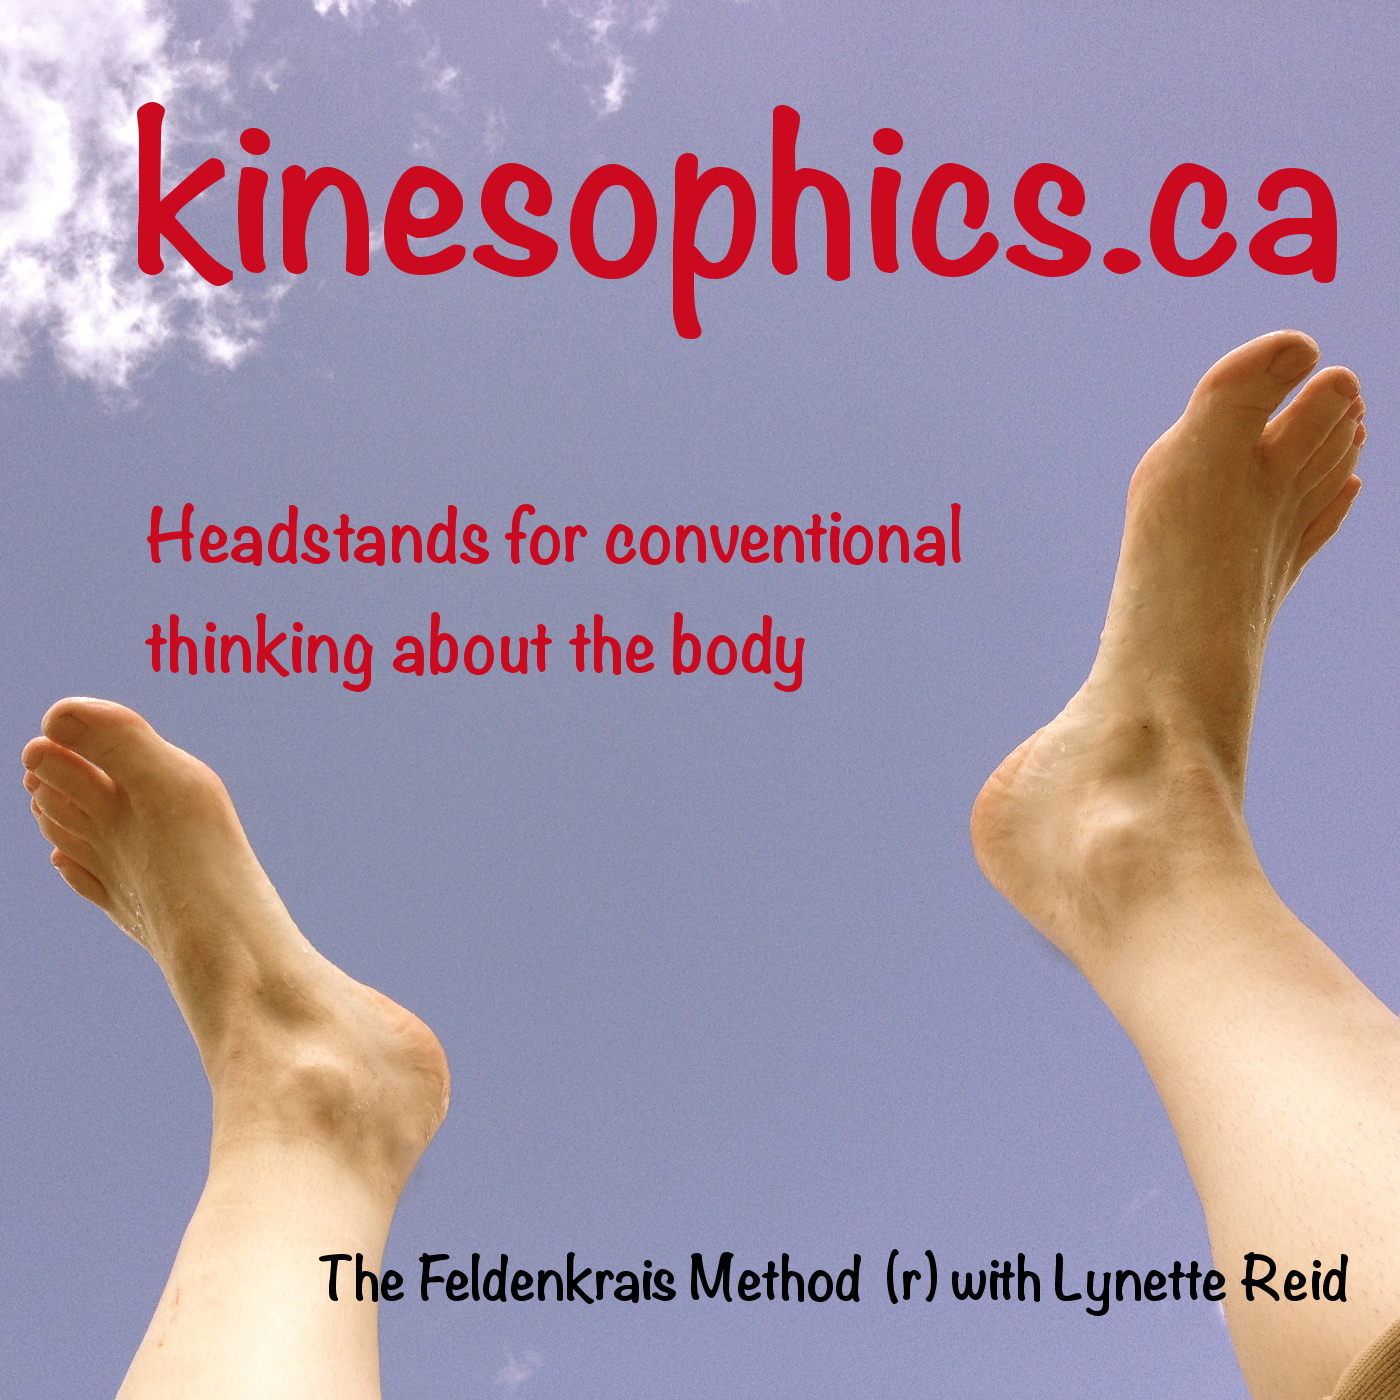 kinesophics: the feldenkrais method with lynette reid